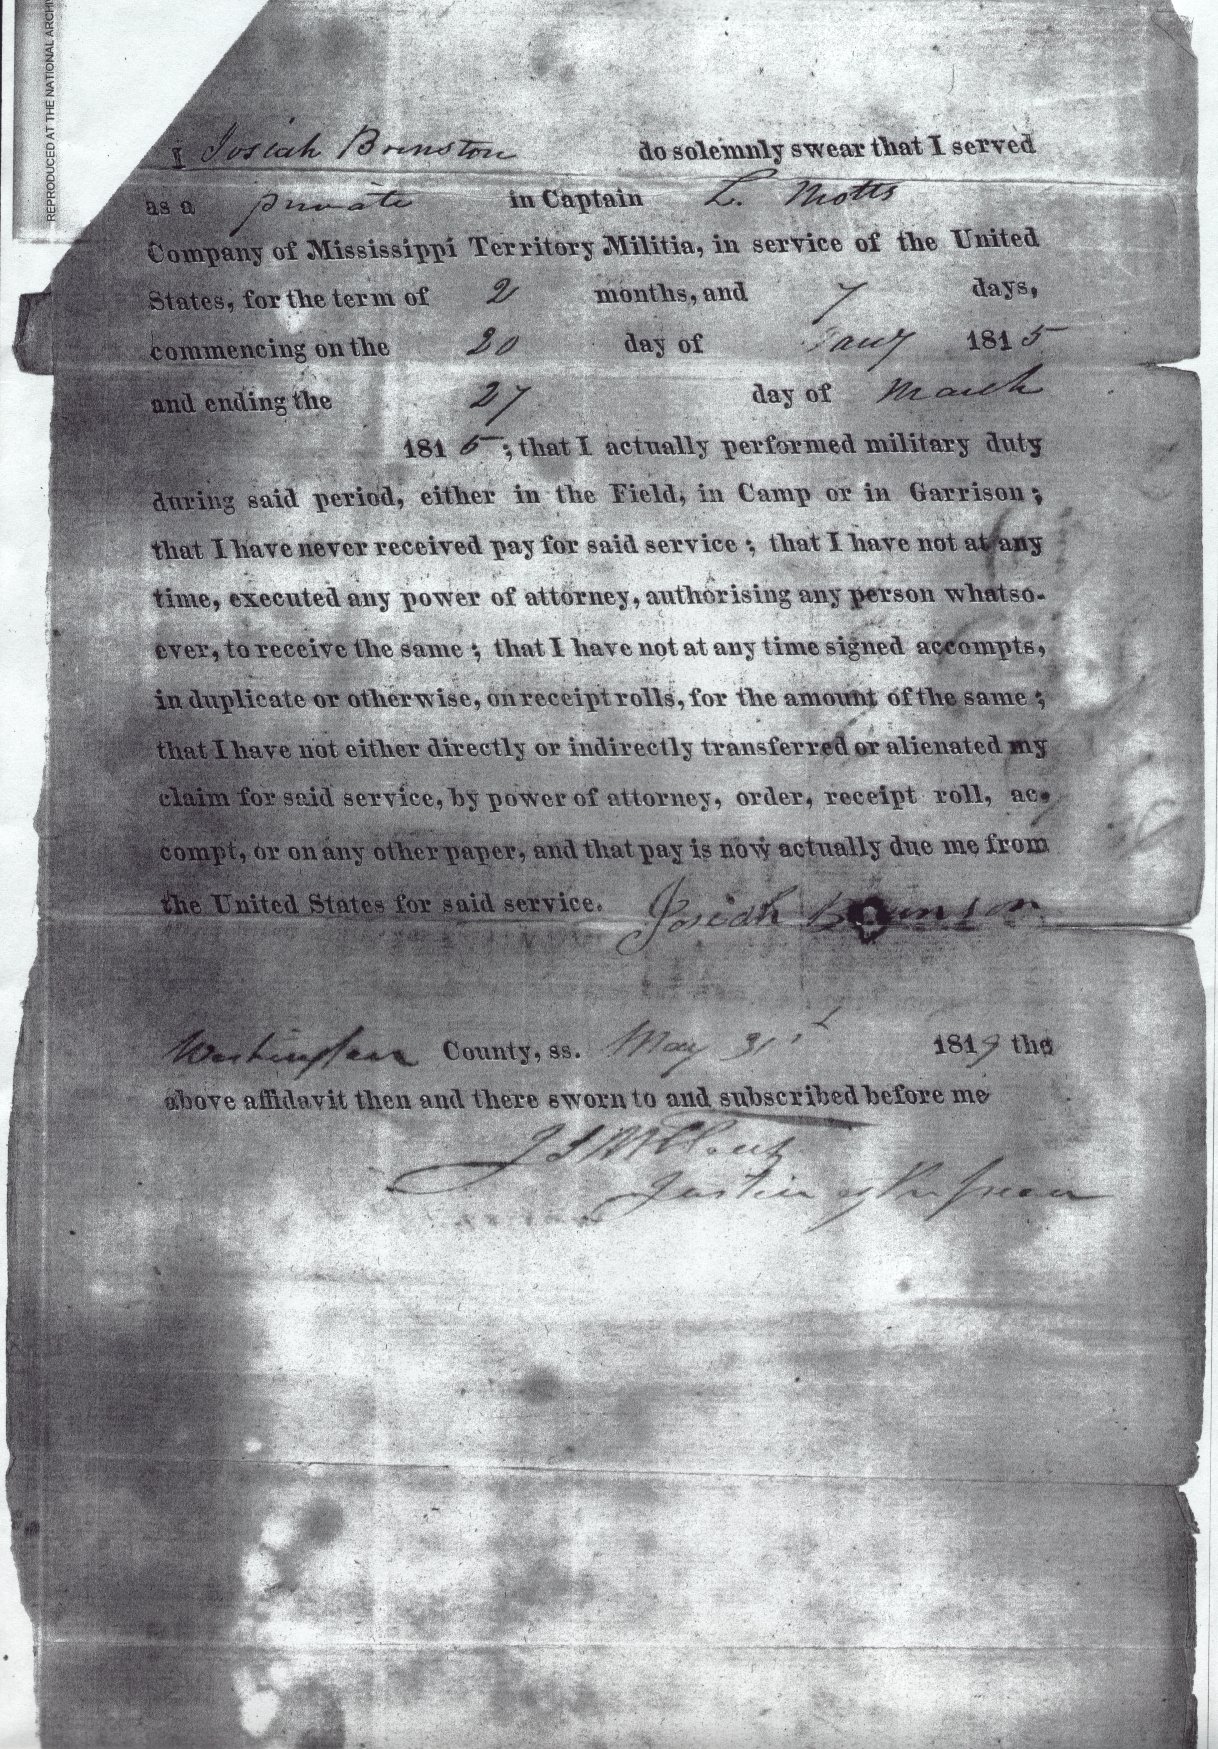 Josiah Affidavit of Military Service in War of 1812